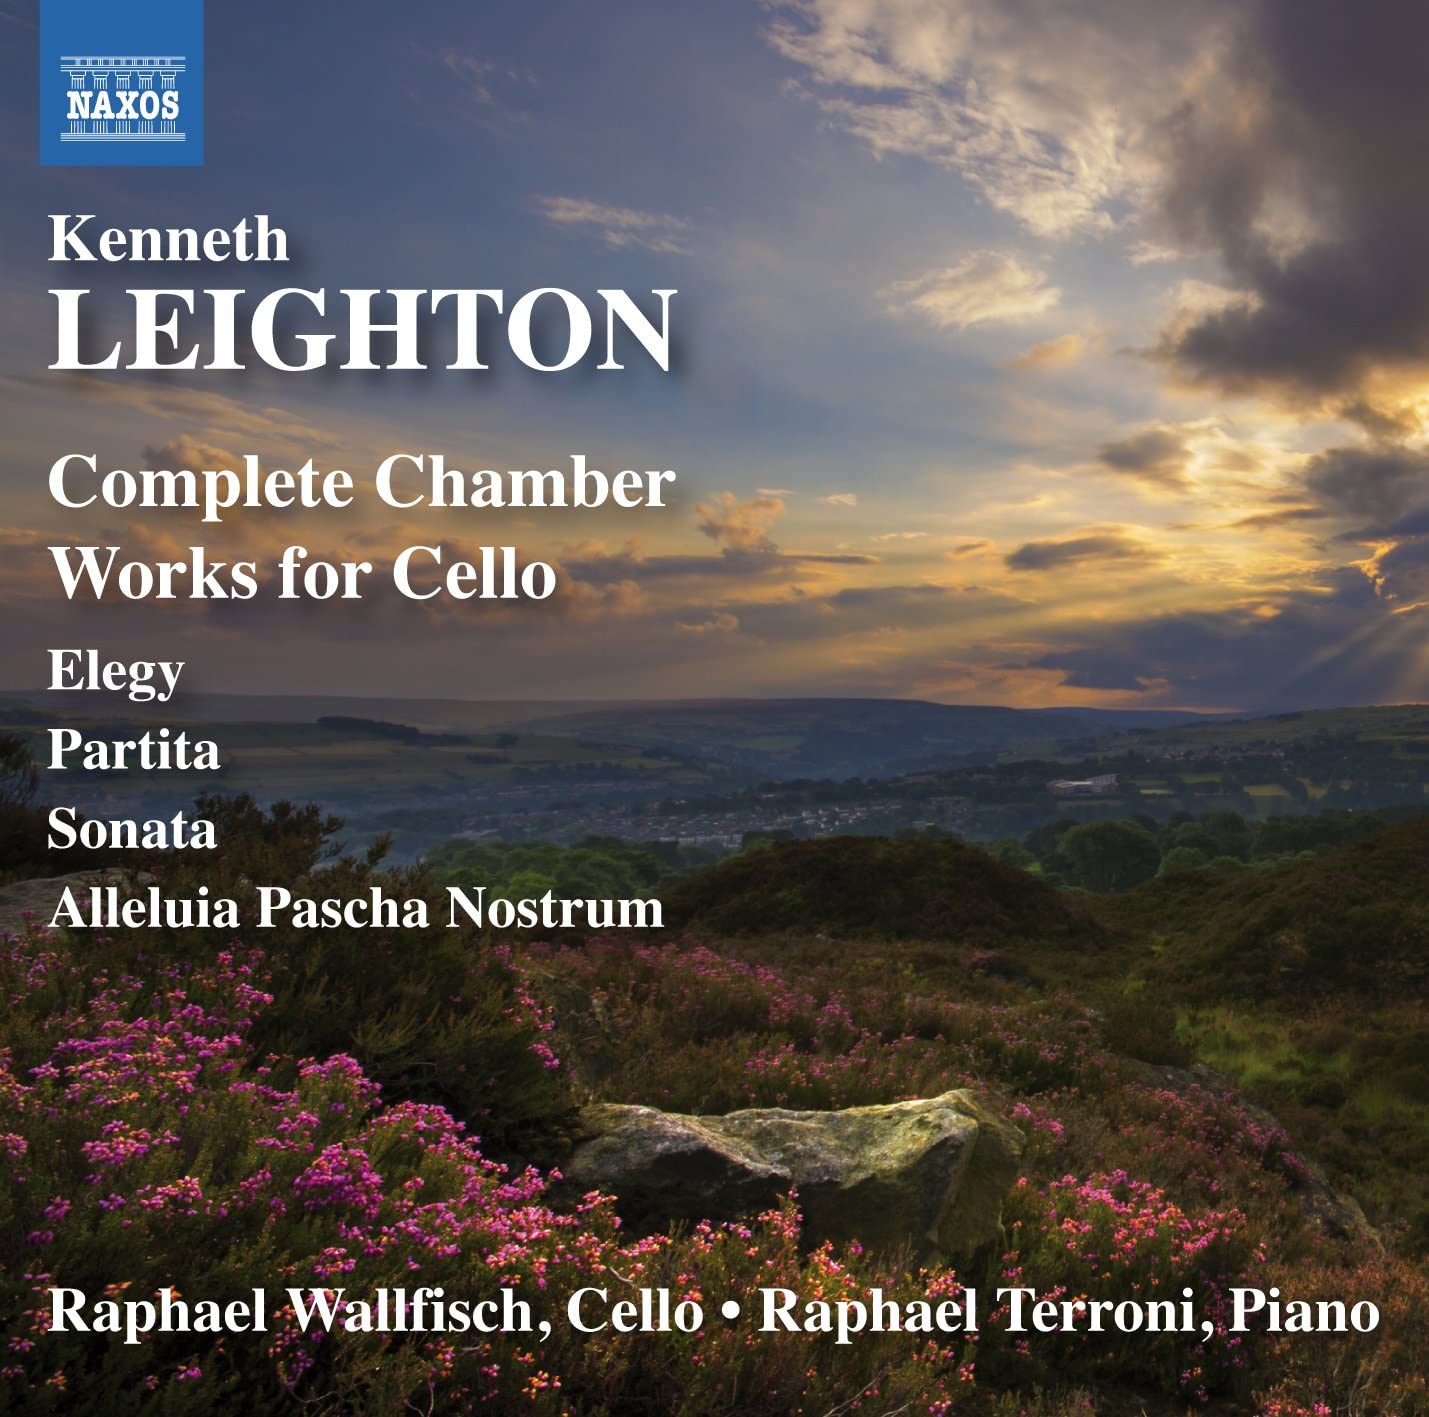 Kenneth Leighton - Works for Cello